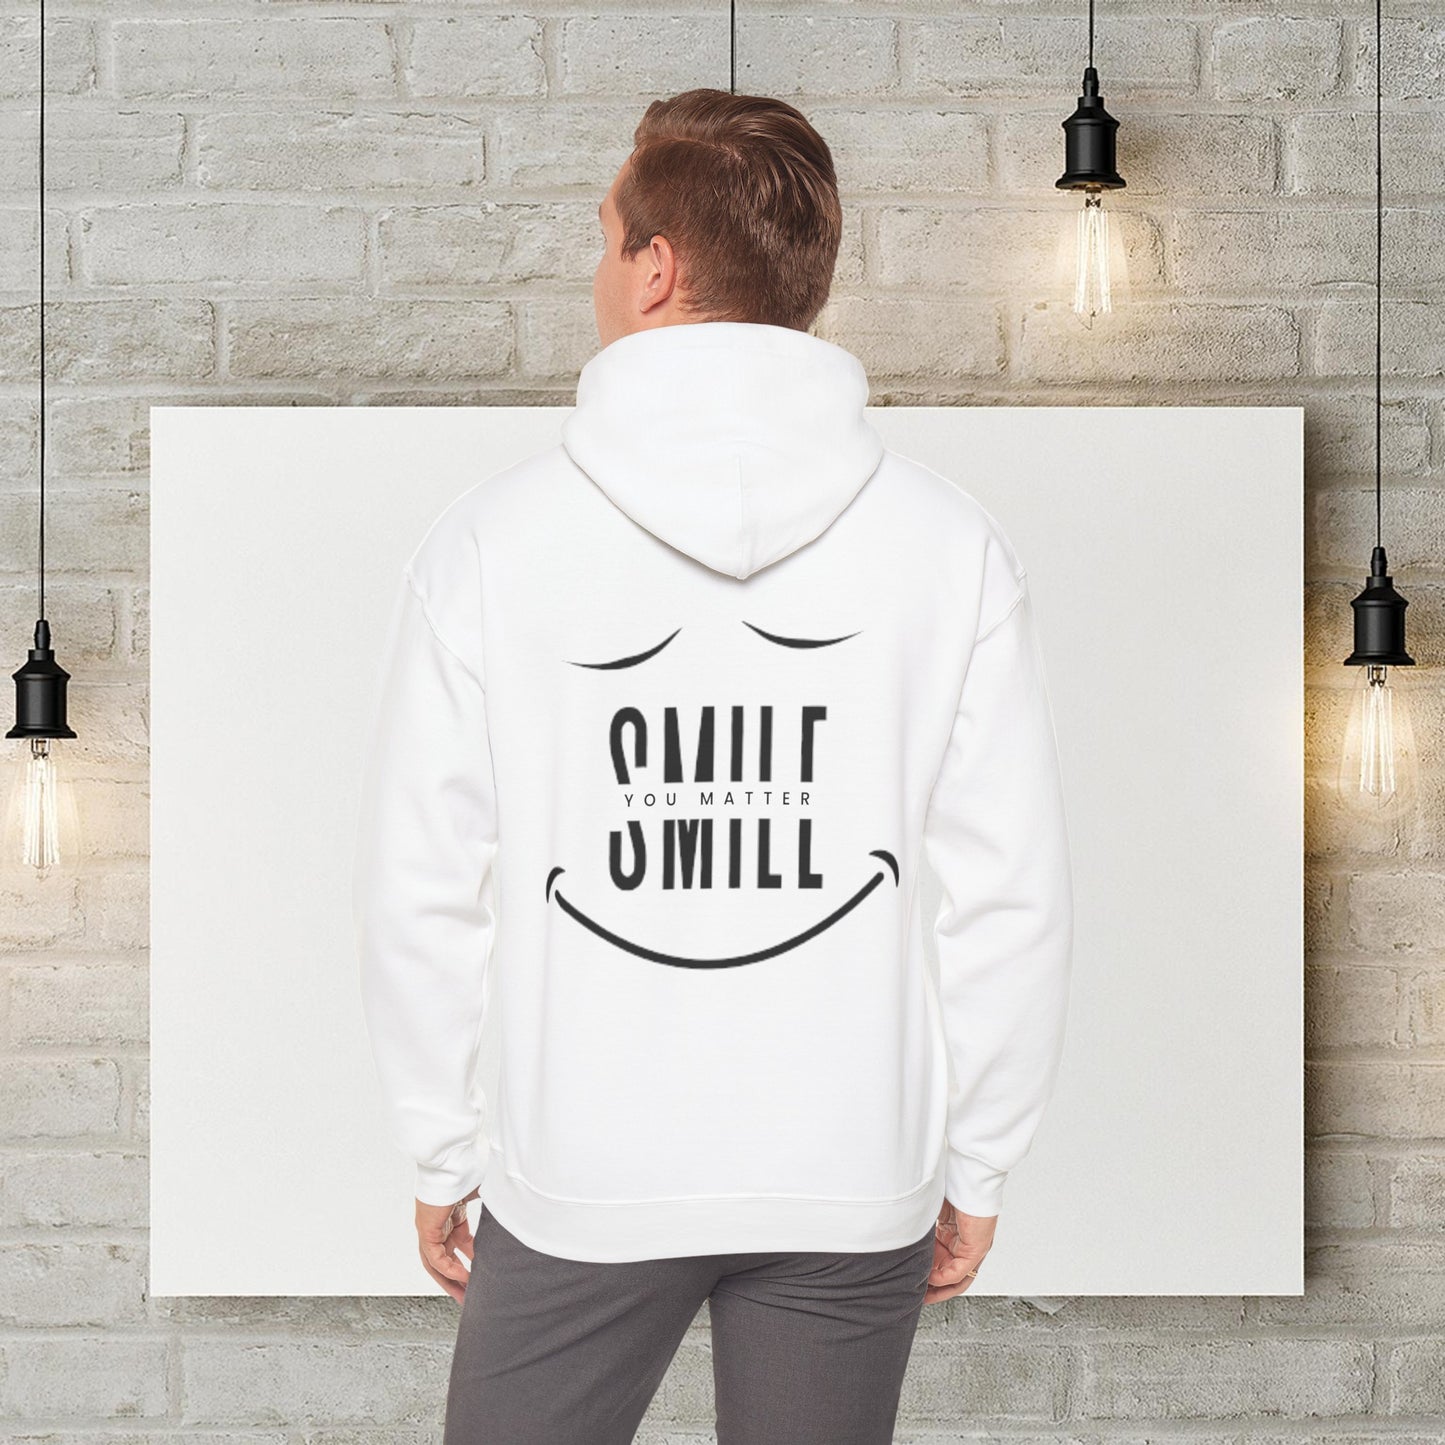 Humor Haven Apparel™: You Matter Hooded Sweatshirt